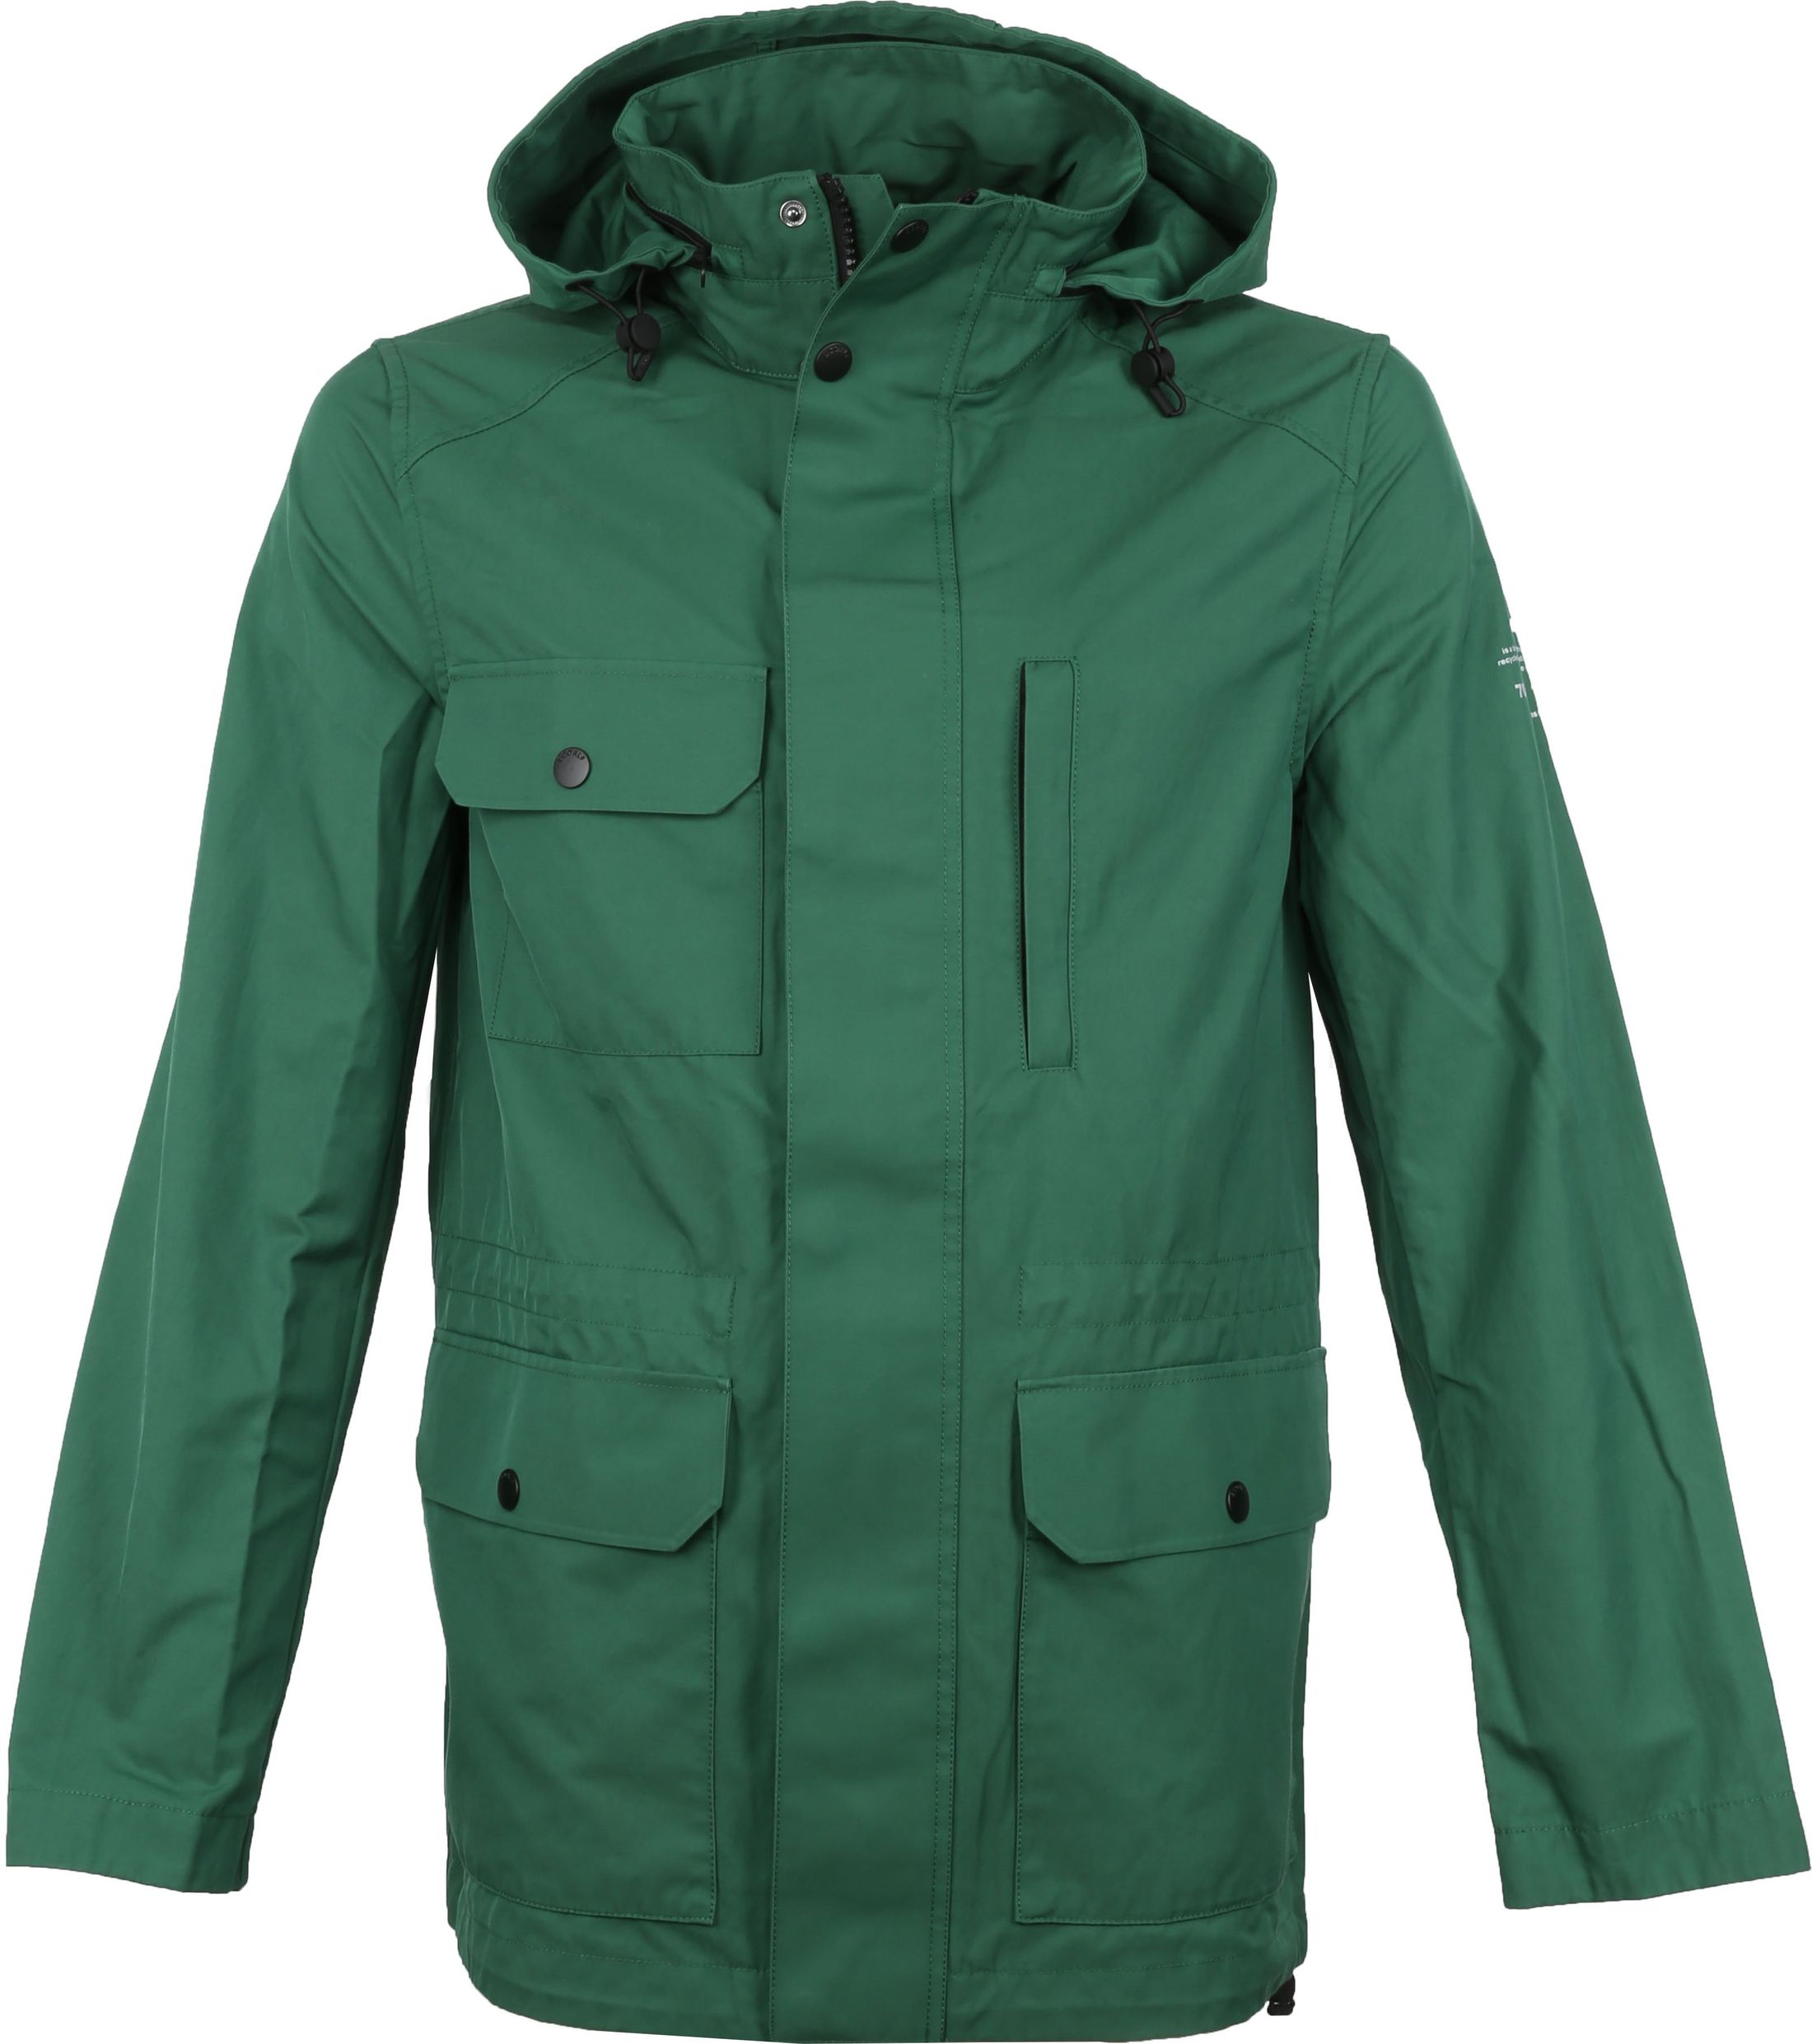 Ecoalf Cuatre Jacket Green size L